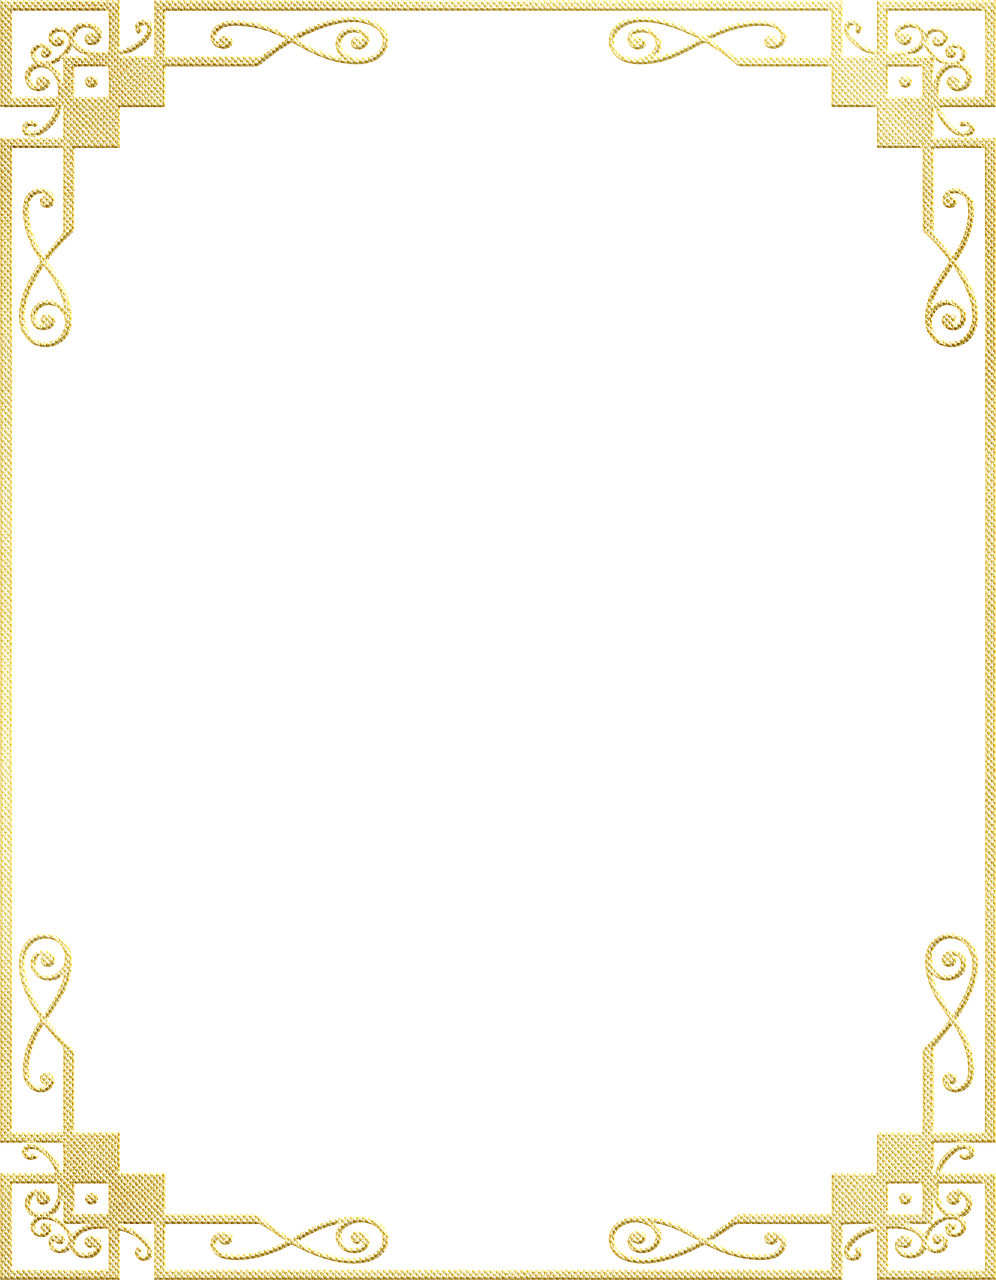 a gold frame on a black background, a digital rendering, by Andrei Kolkoutine, flickr, art deco, calligraphy border, jugendstil background, fine simple delicate structure, metal border